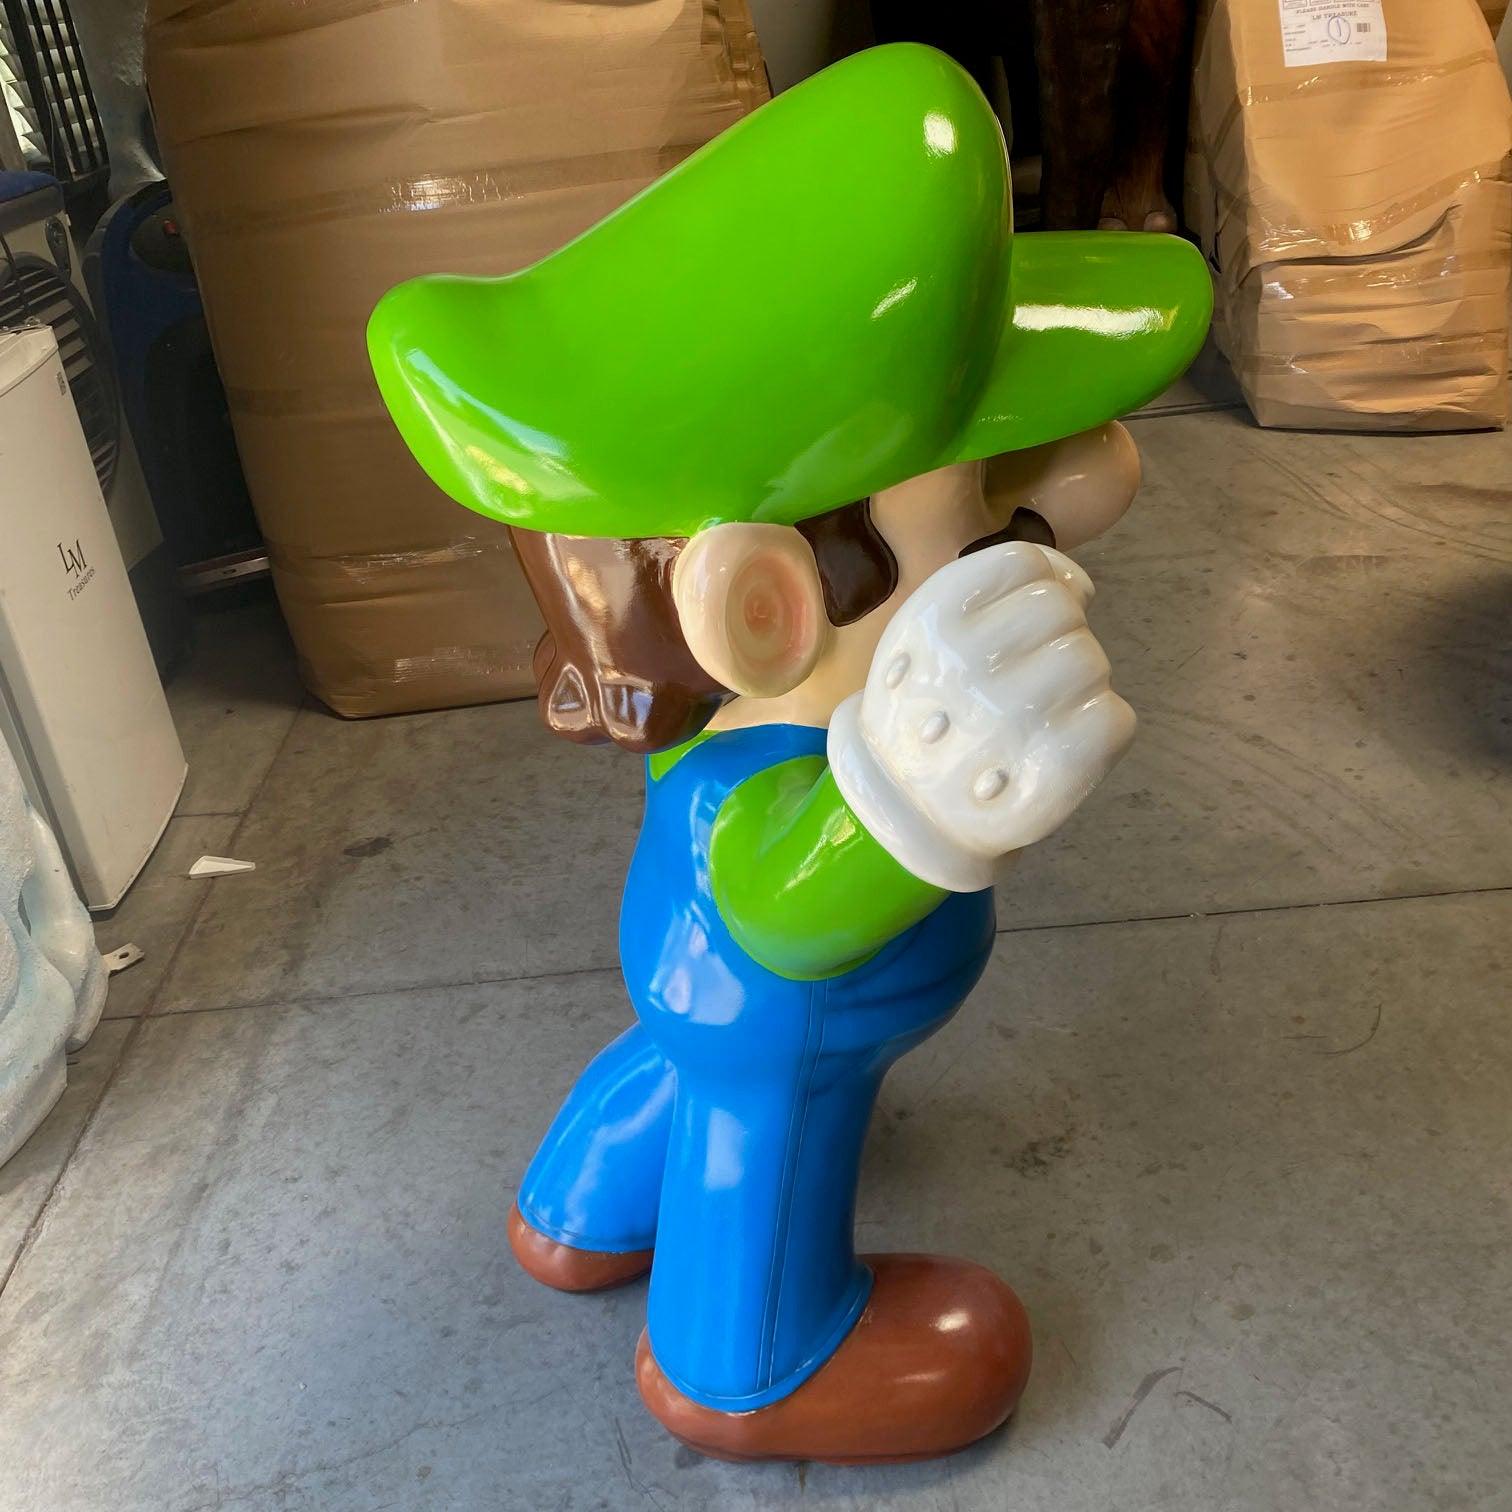 Small Green Jumper Boy Statue - LM Treasures Prop Rentals 